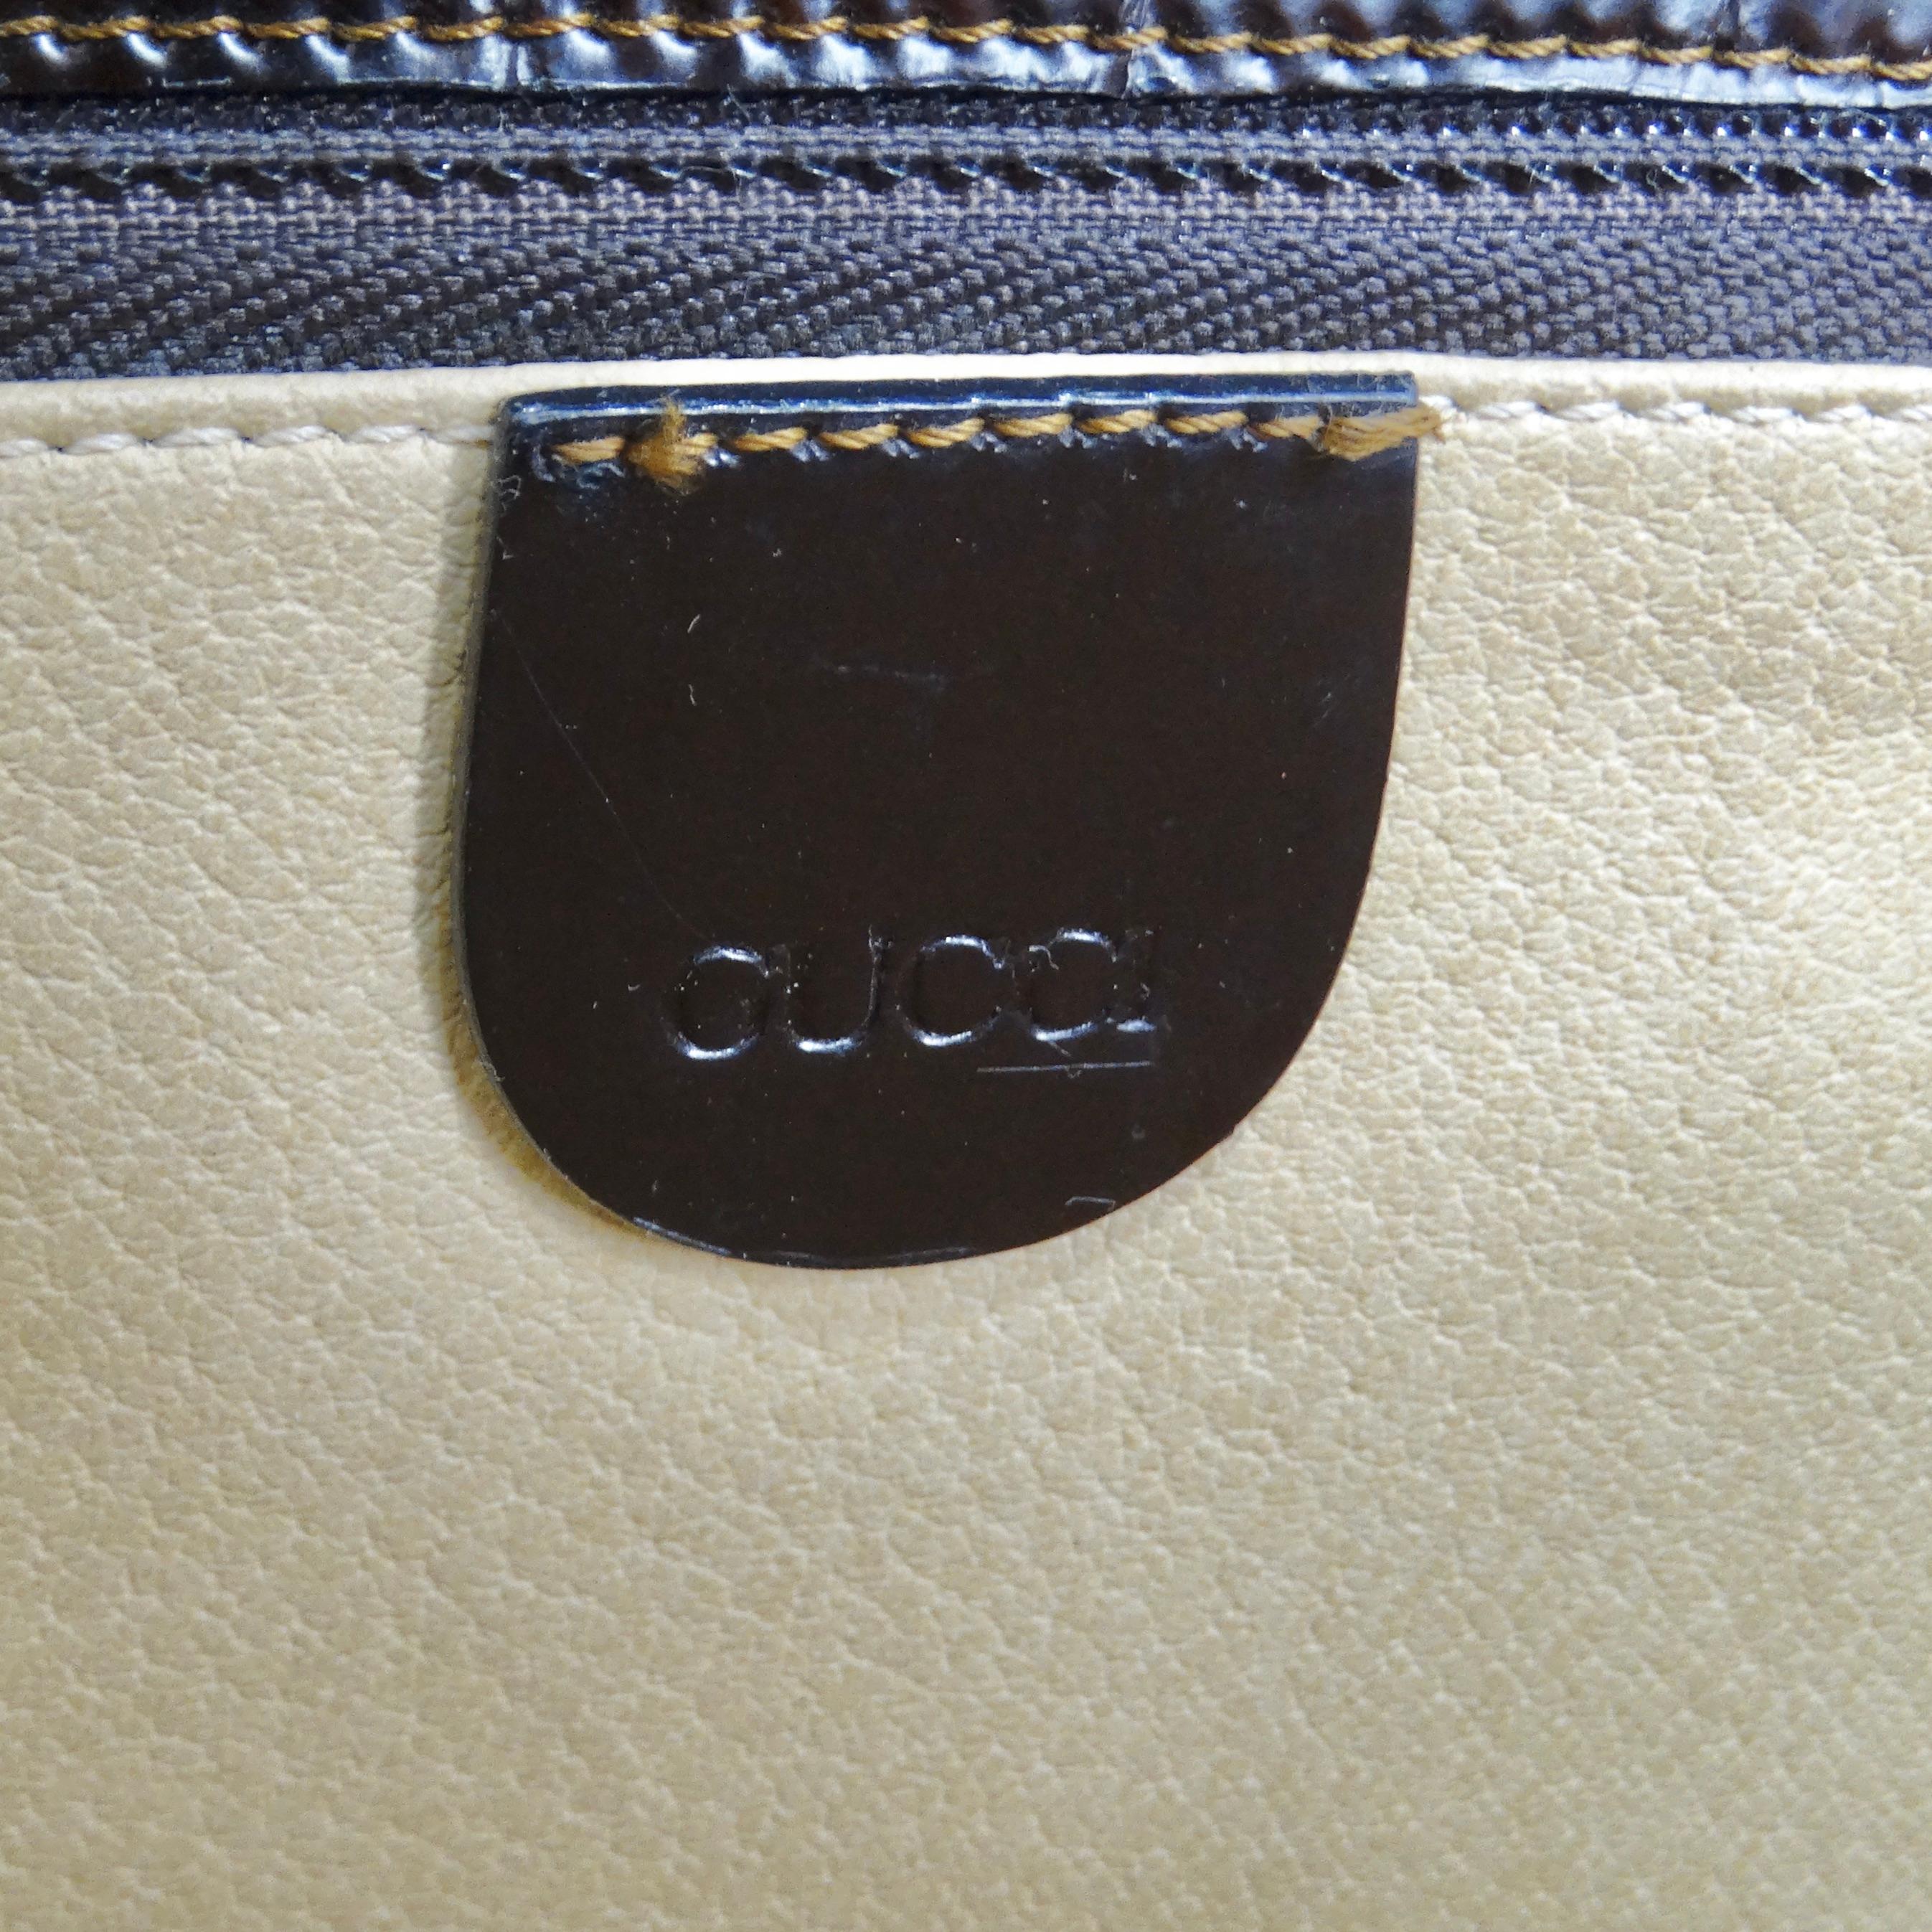 Gucci 1980s Alligator Embossed Leather Handbag For Sale 7